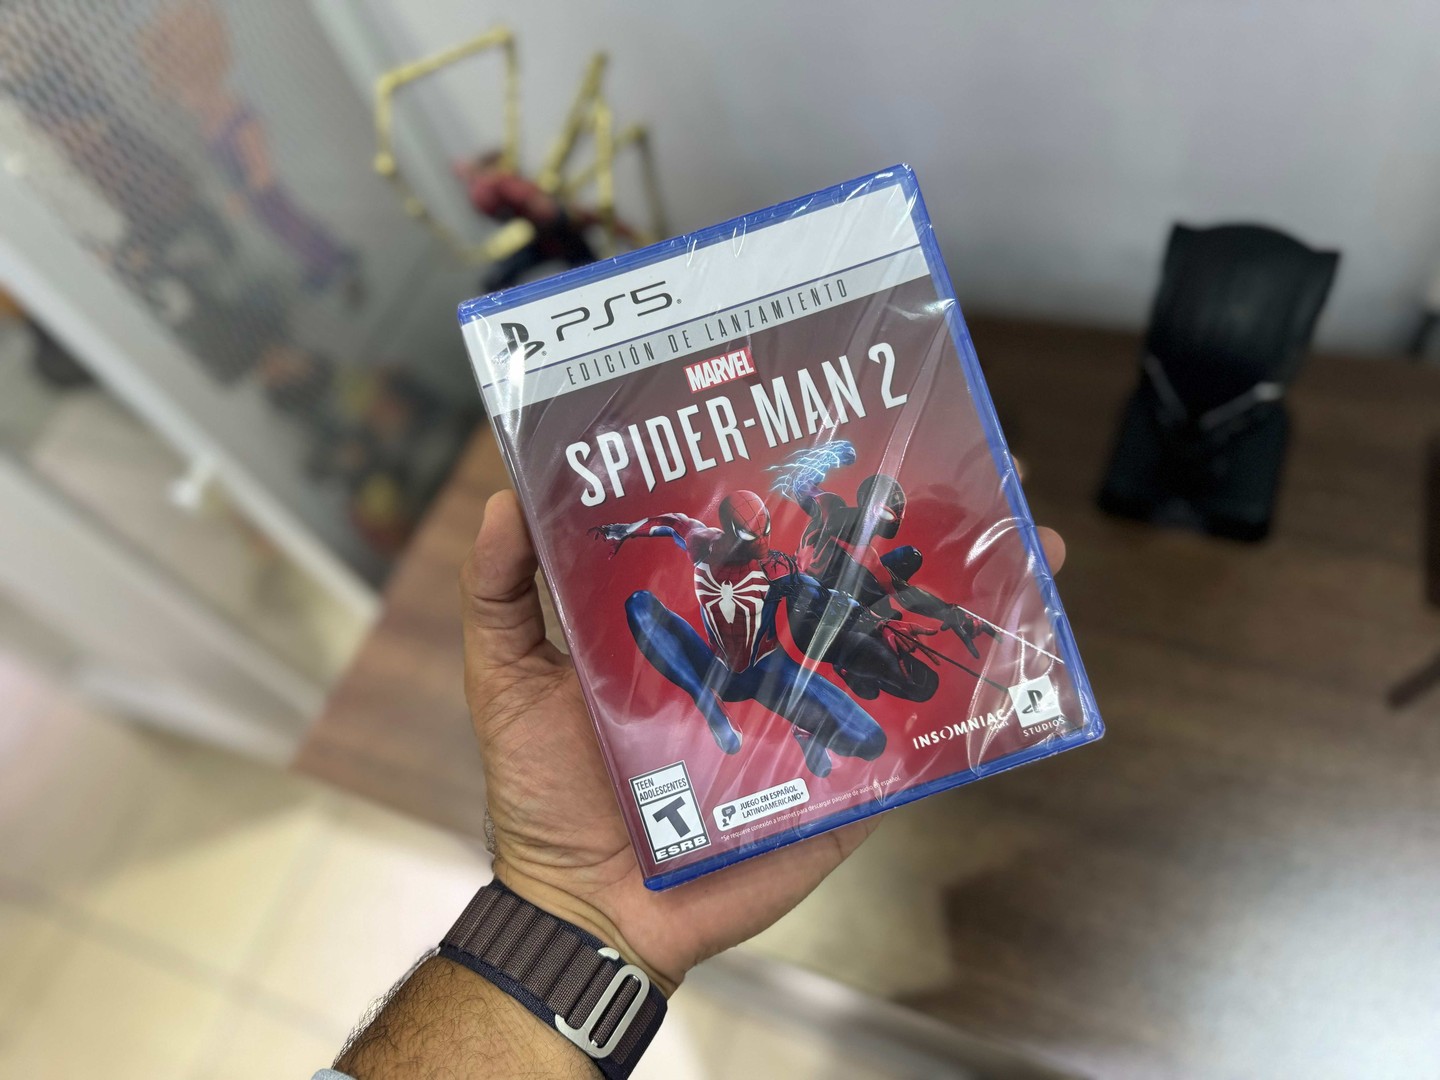 consolas y videojuegos - Video Juego Spider-Man 2 PLAYSTATION 5 Sellados, RD$ 4,500 NEG